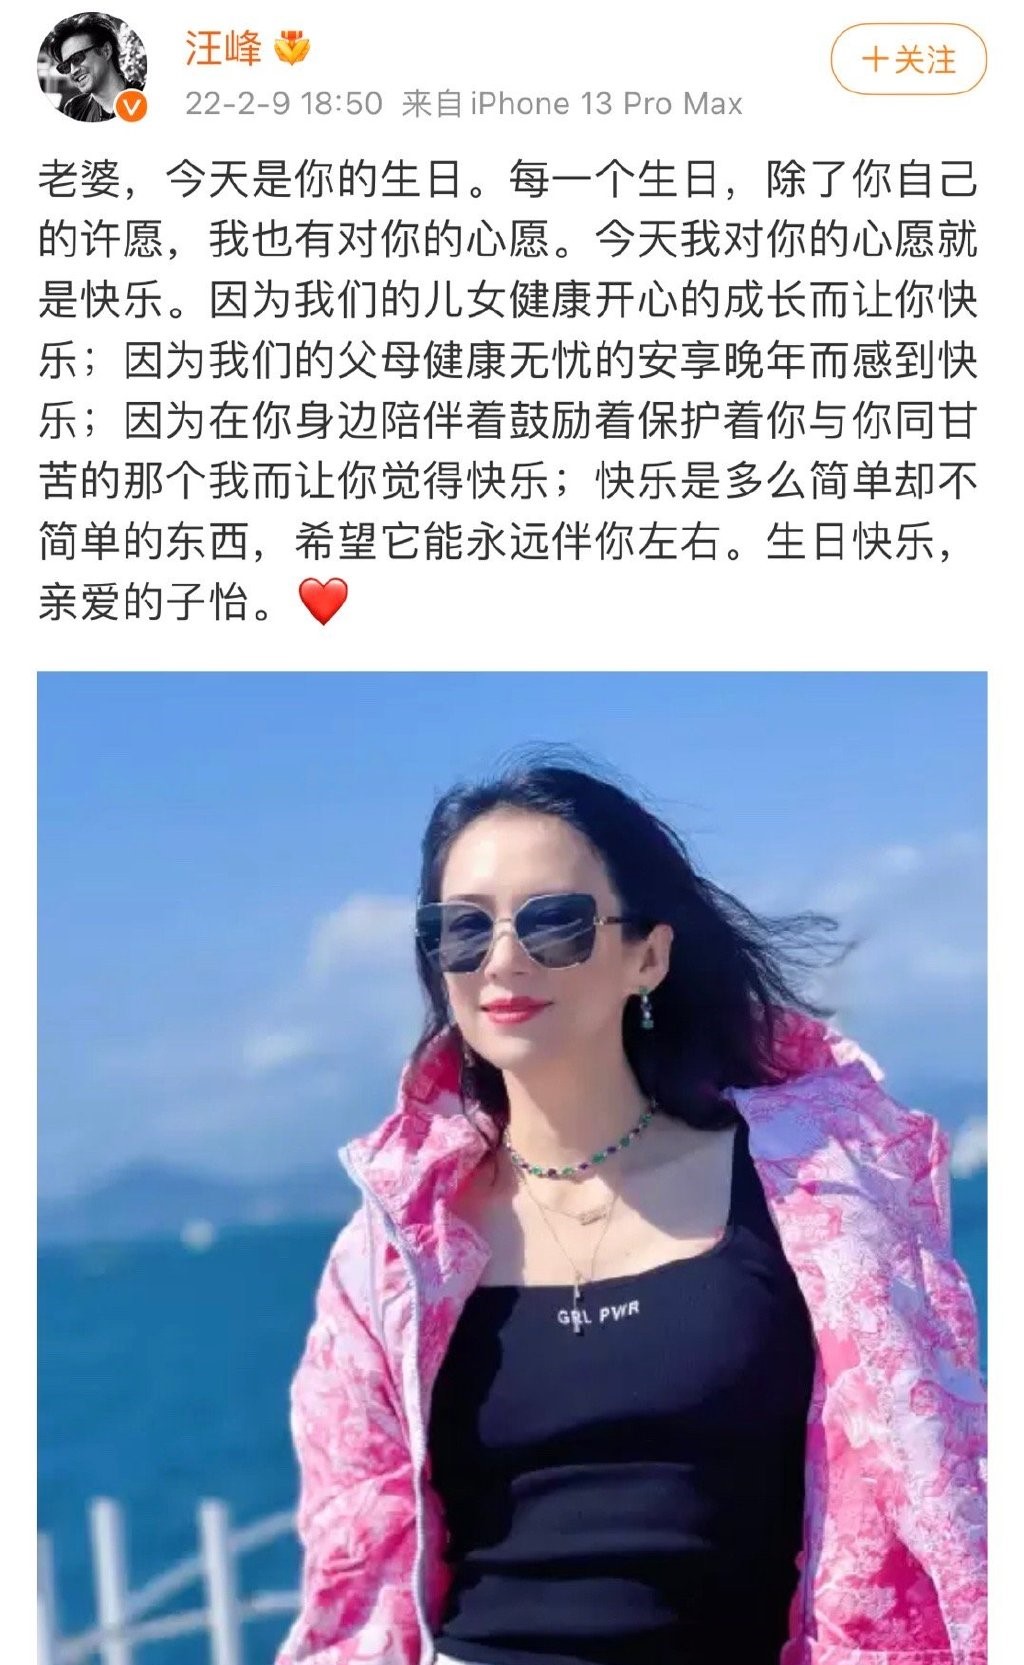 網友挖出汪峰每年都會在微博祝福老婆生日，高調晒恩愛，惟今年卻反常地沒有公開發文祝賀，因而被推測婚變早有先兆。